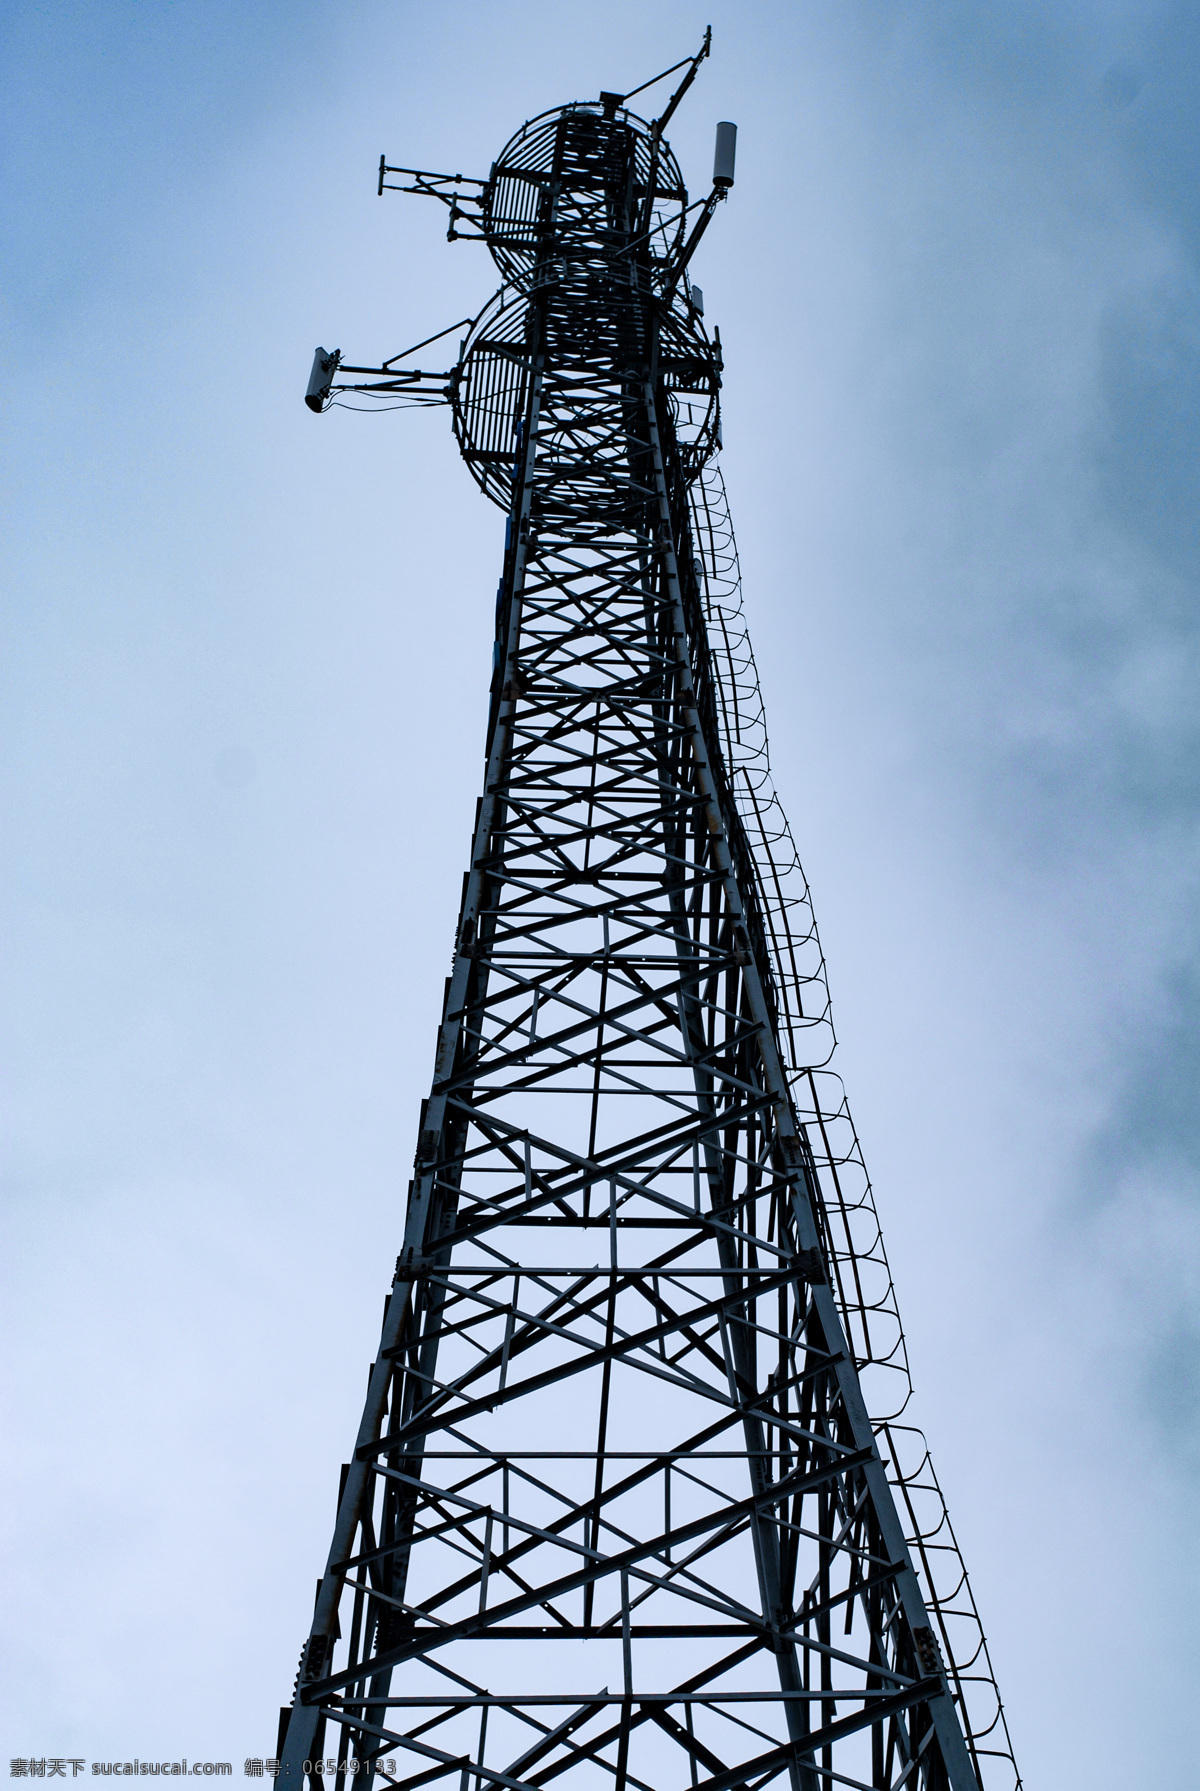 信号塔 信号 一栋 钢架 铁塔 工程 通信工程 中国一栋 中国联通 塔 现代科技